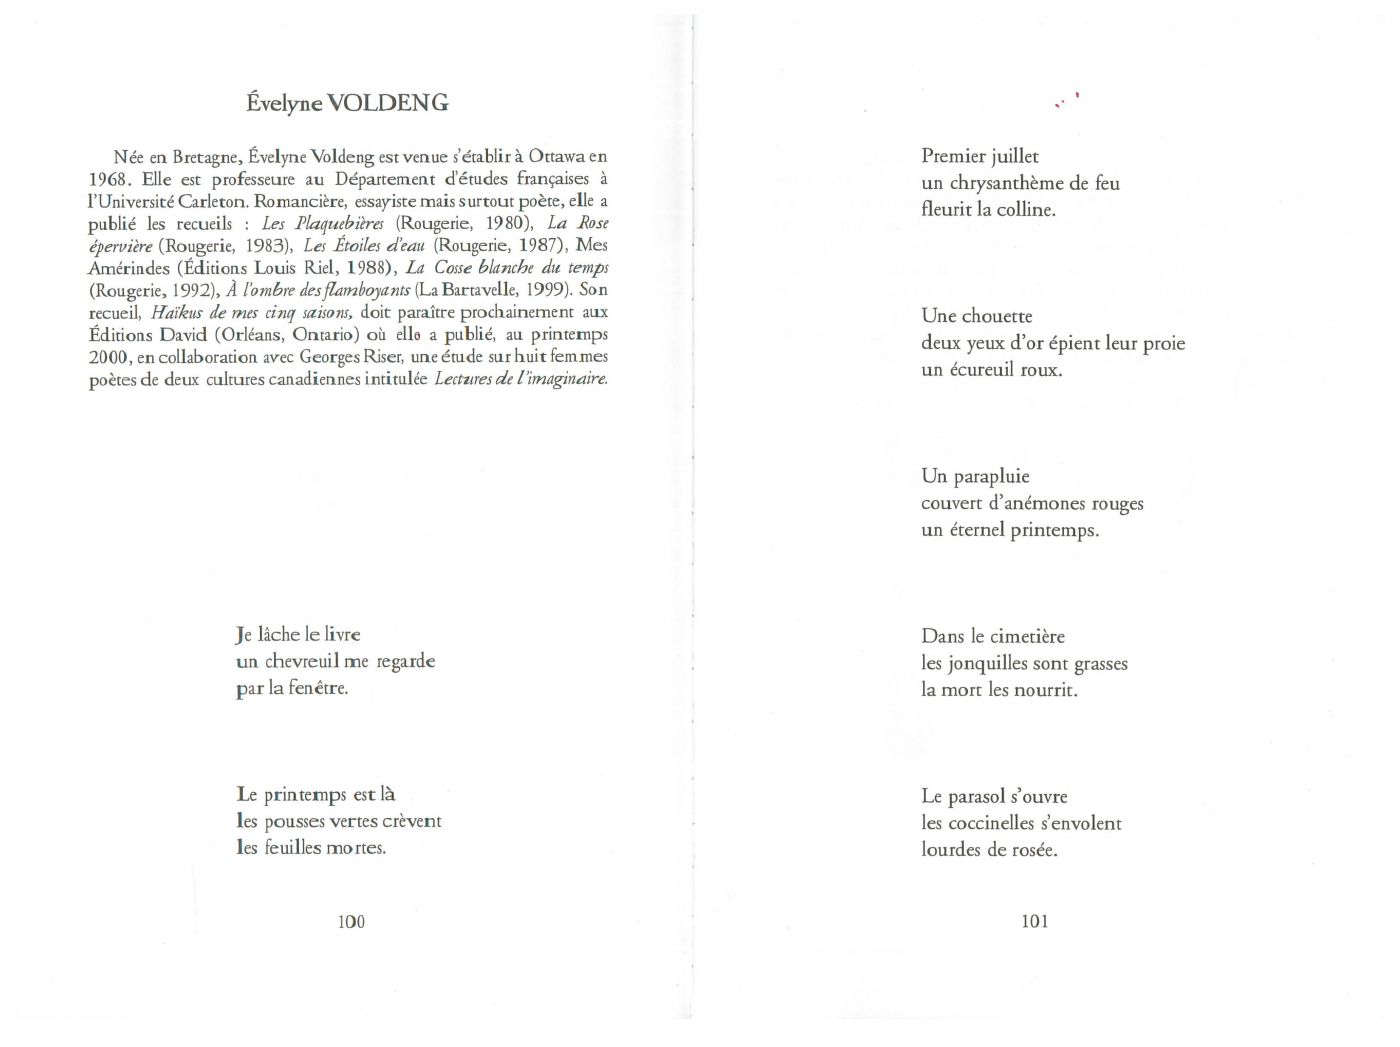 Document imprimé, en français. Disposés sur deux pages, une série de sept haïkus de trois lignes chacun. Ils sont précédés de la biographie de la poète.